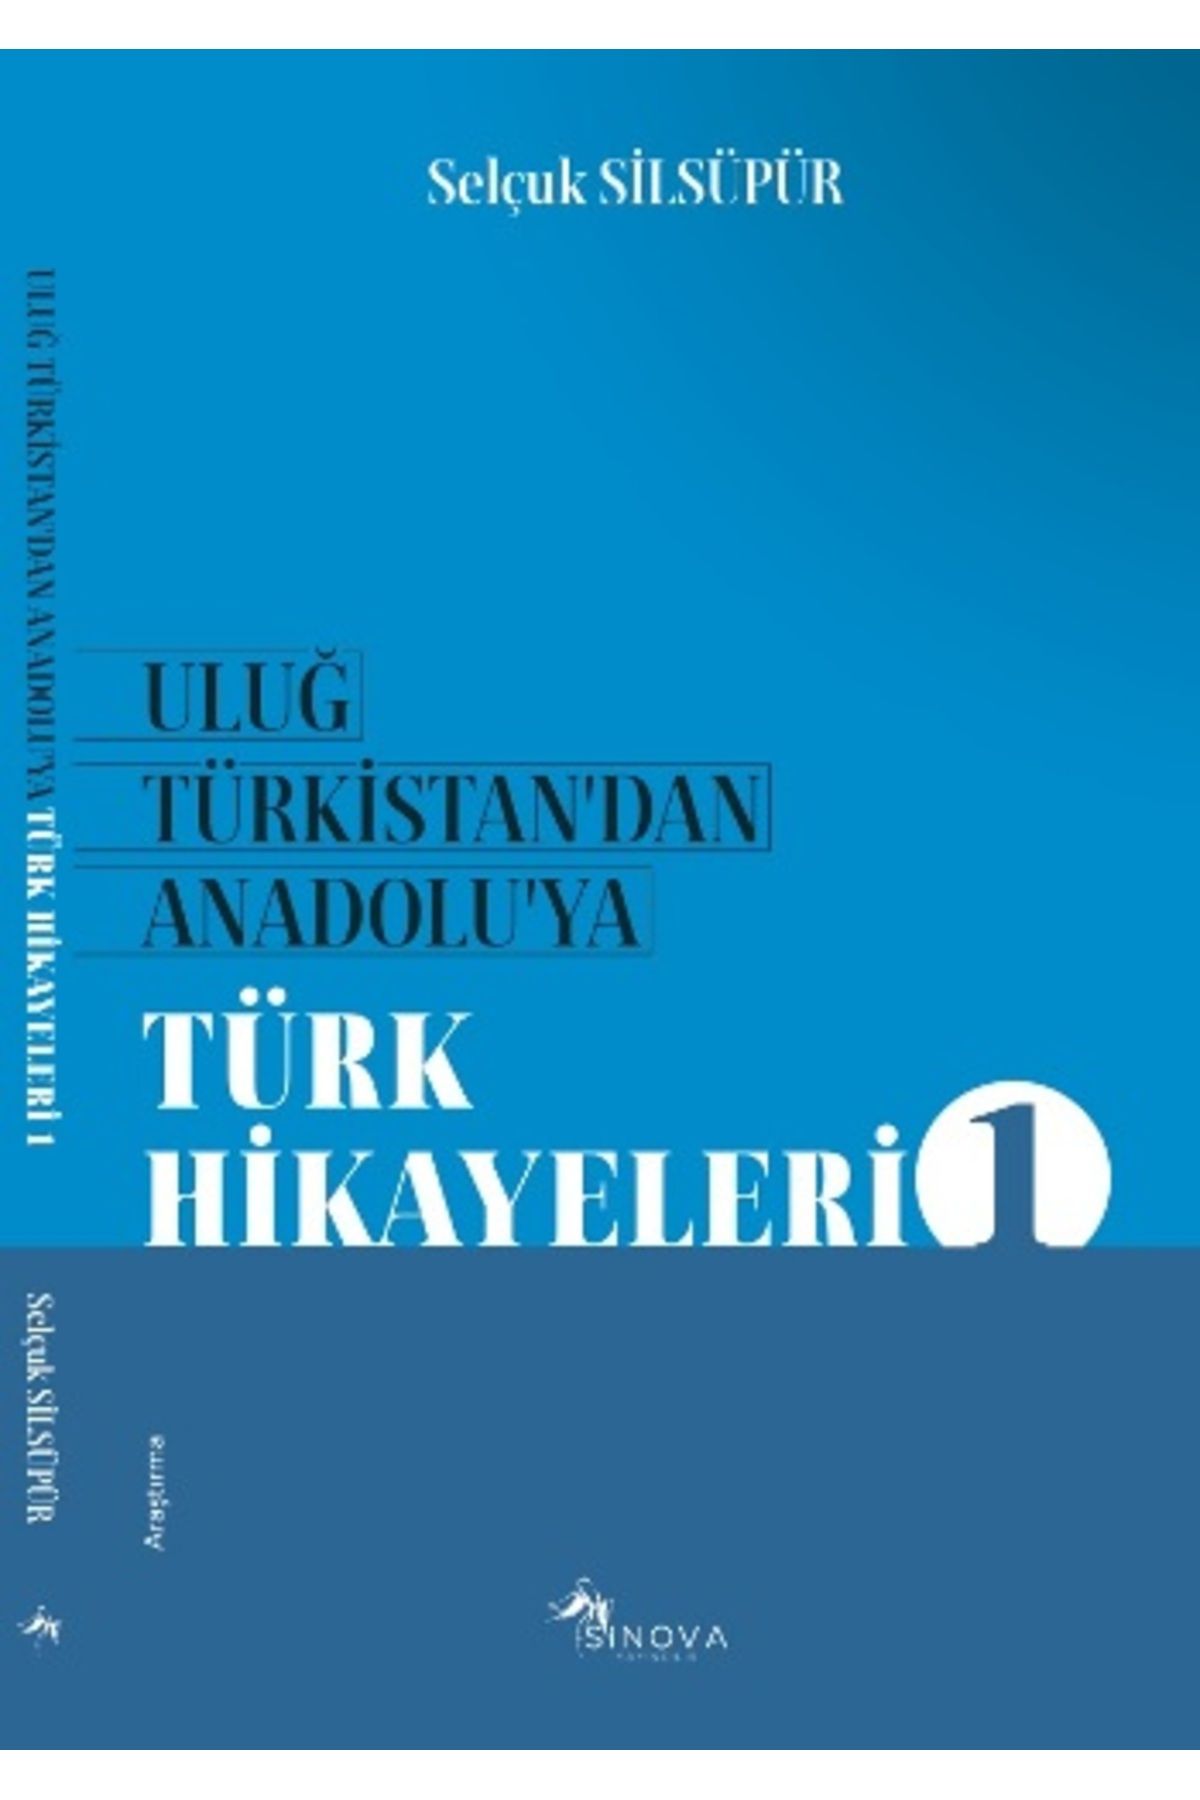 Sinova Yayıncılık Uluğ Türkistan’dan Anadolu’ya Türk Halk Hikayeleri